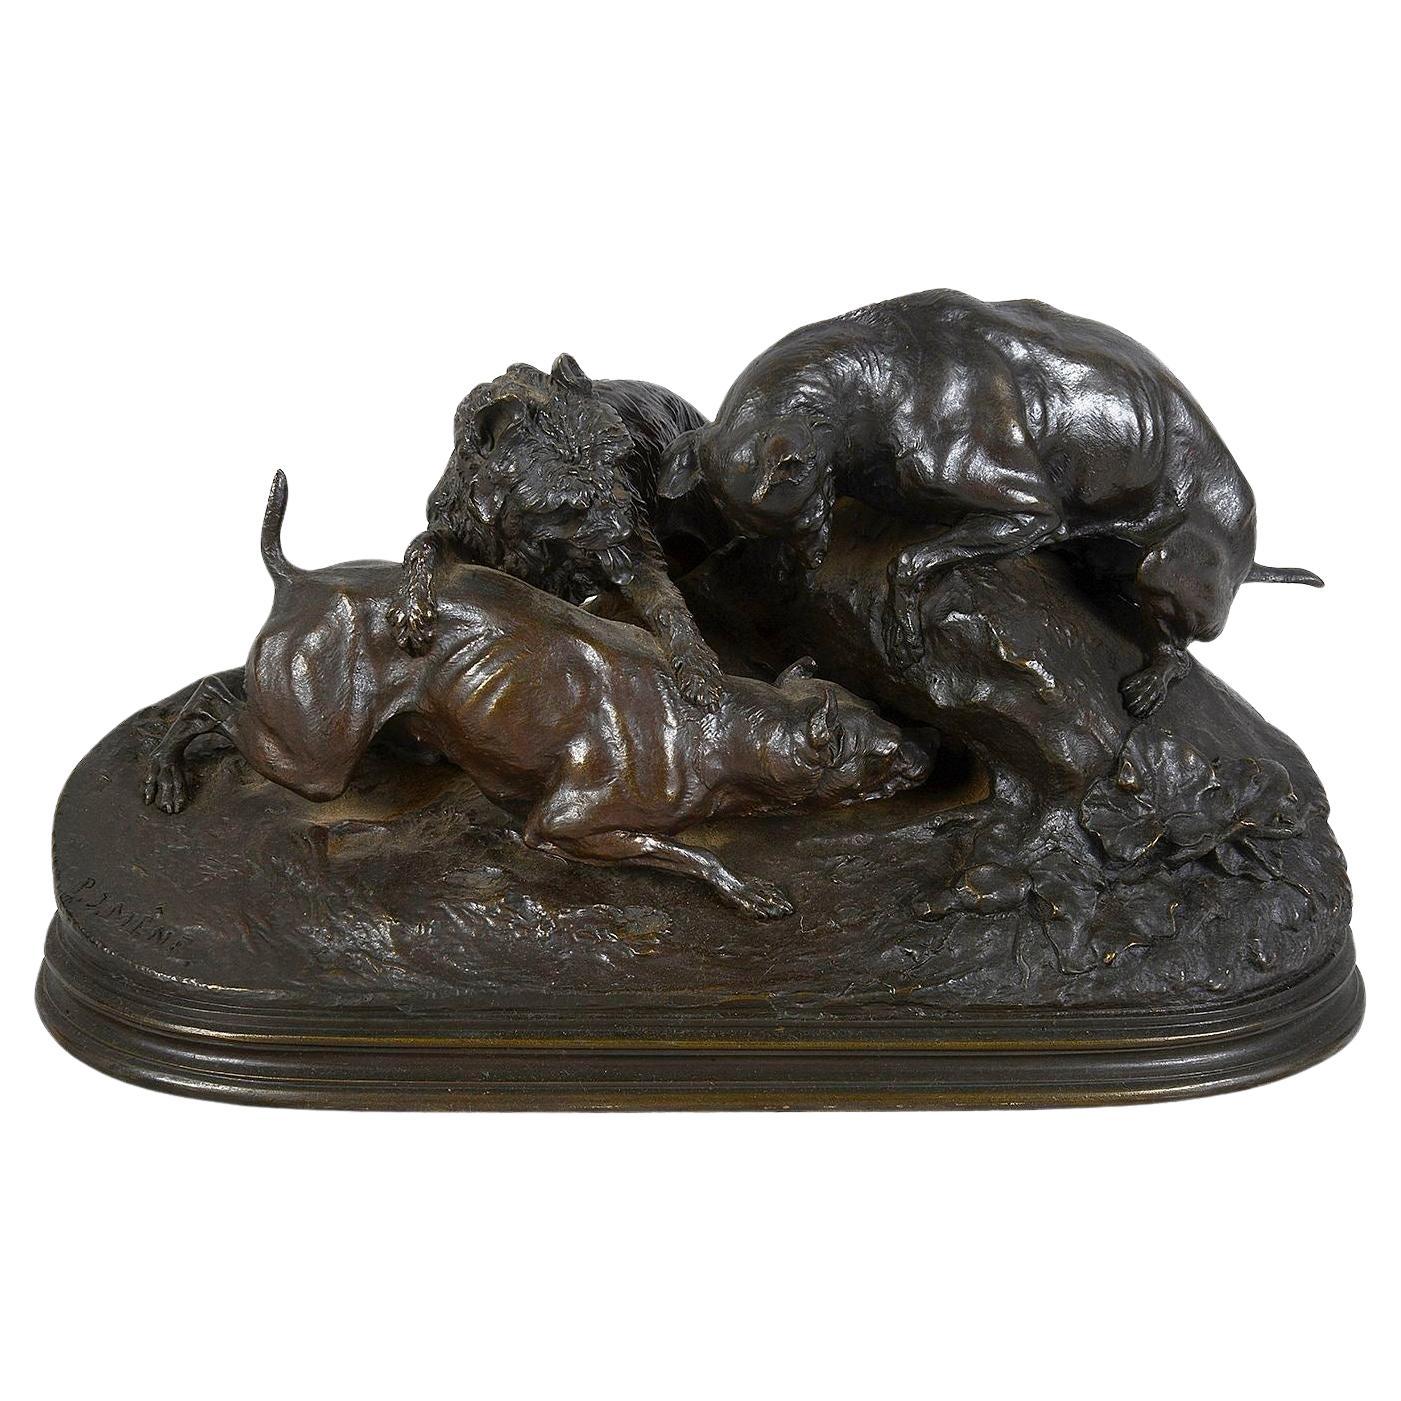 Mene, chien de chasse en bronze, vers 1880